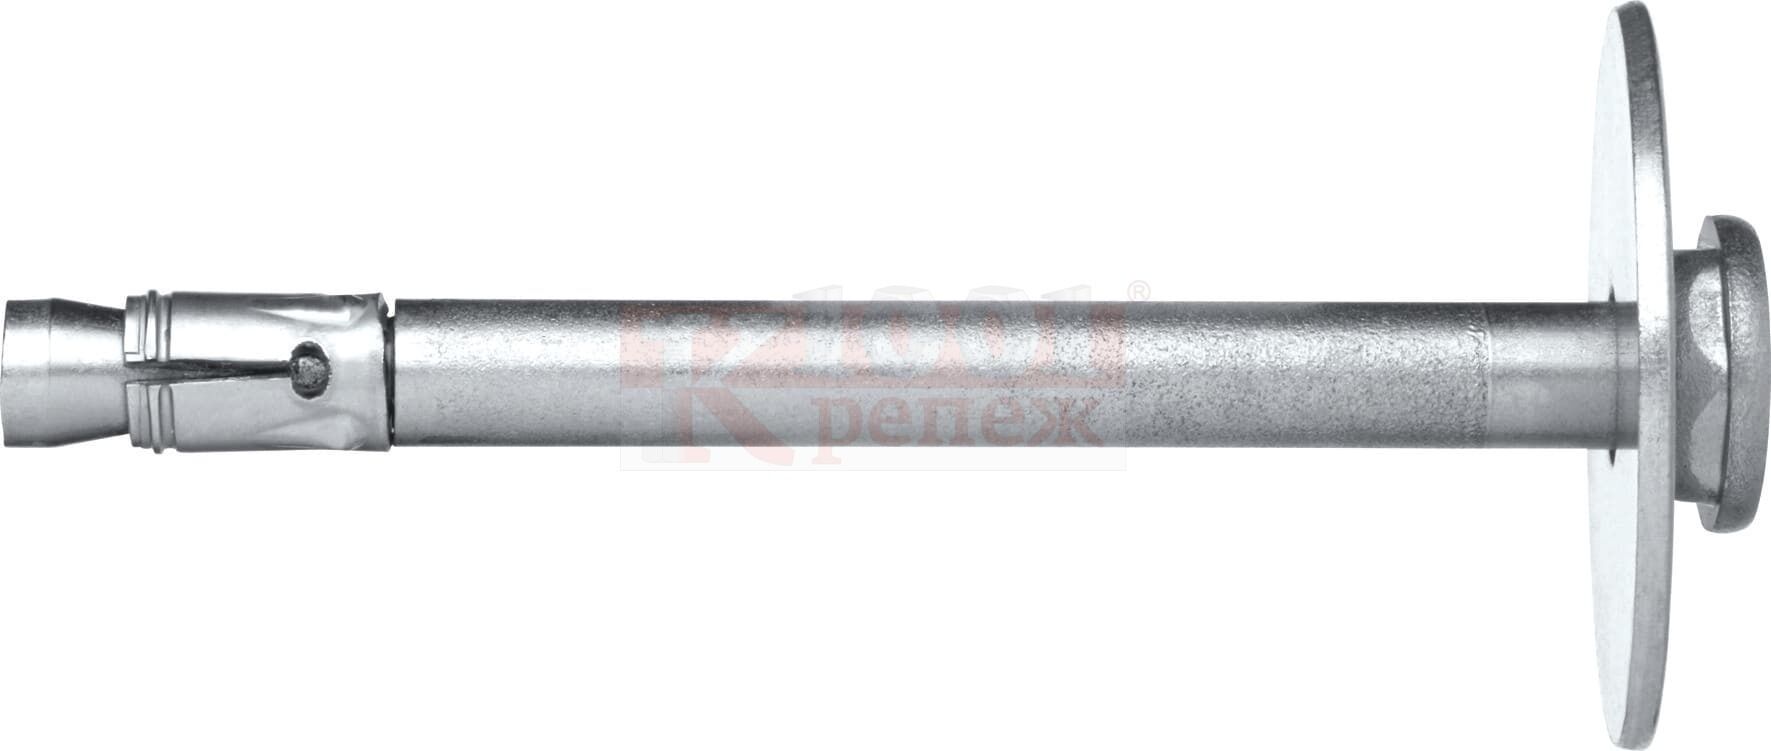 HFB-R A4 Анкер-гвоздь HILTI для крепления огнезащитных плит, 6x60/30/25/20 мм